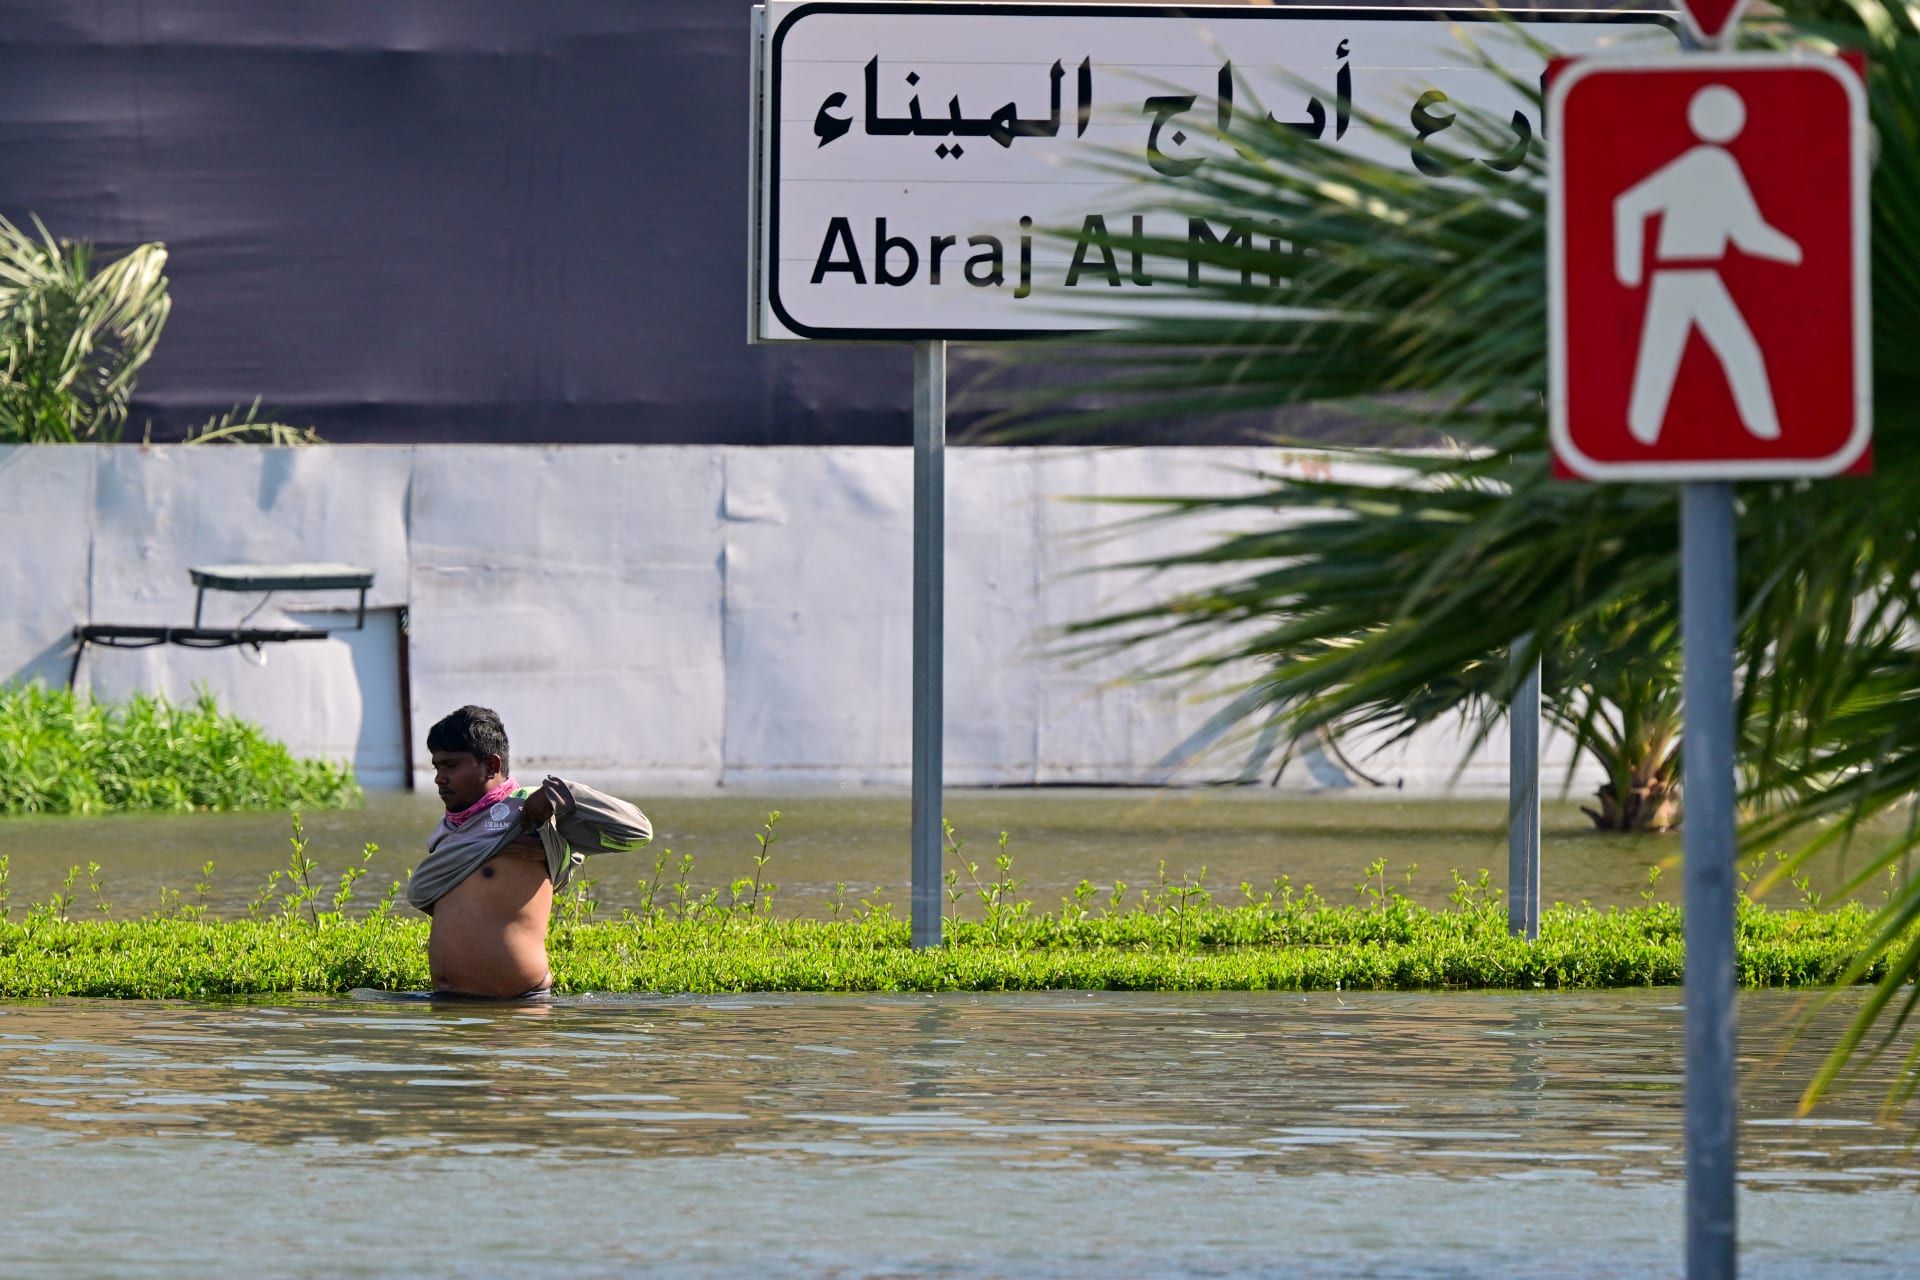 أحدث صور من دبي للفيضانات مع استمرار الجهود لليوم الرابع بعد الأمطار القياسية